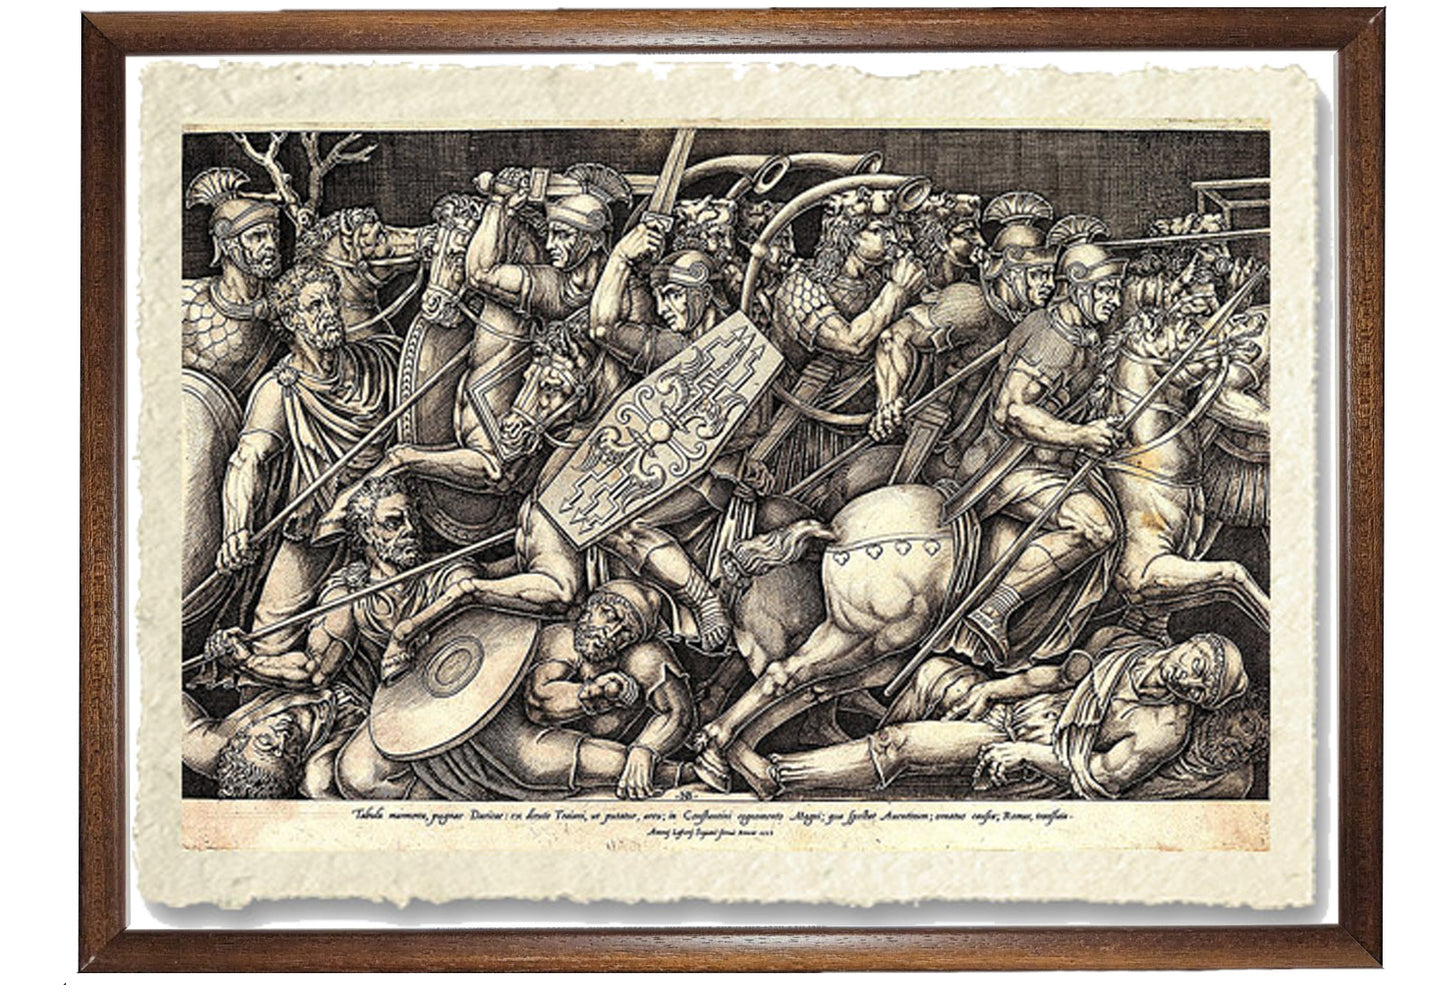 Soldati romani combattono contro i Daci